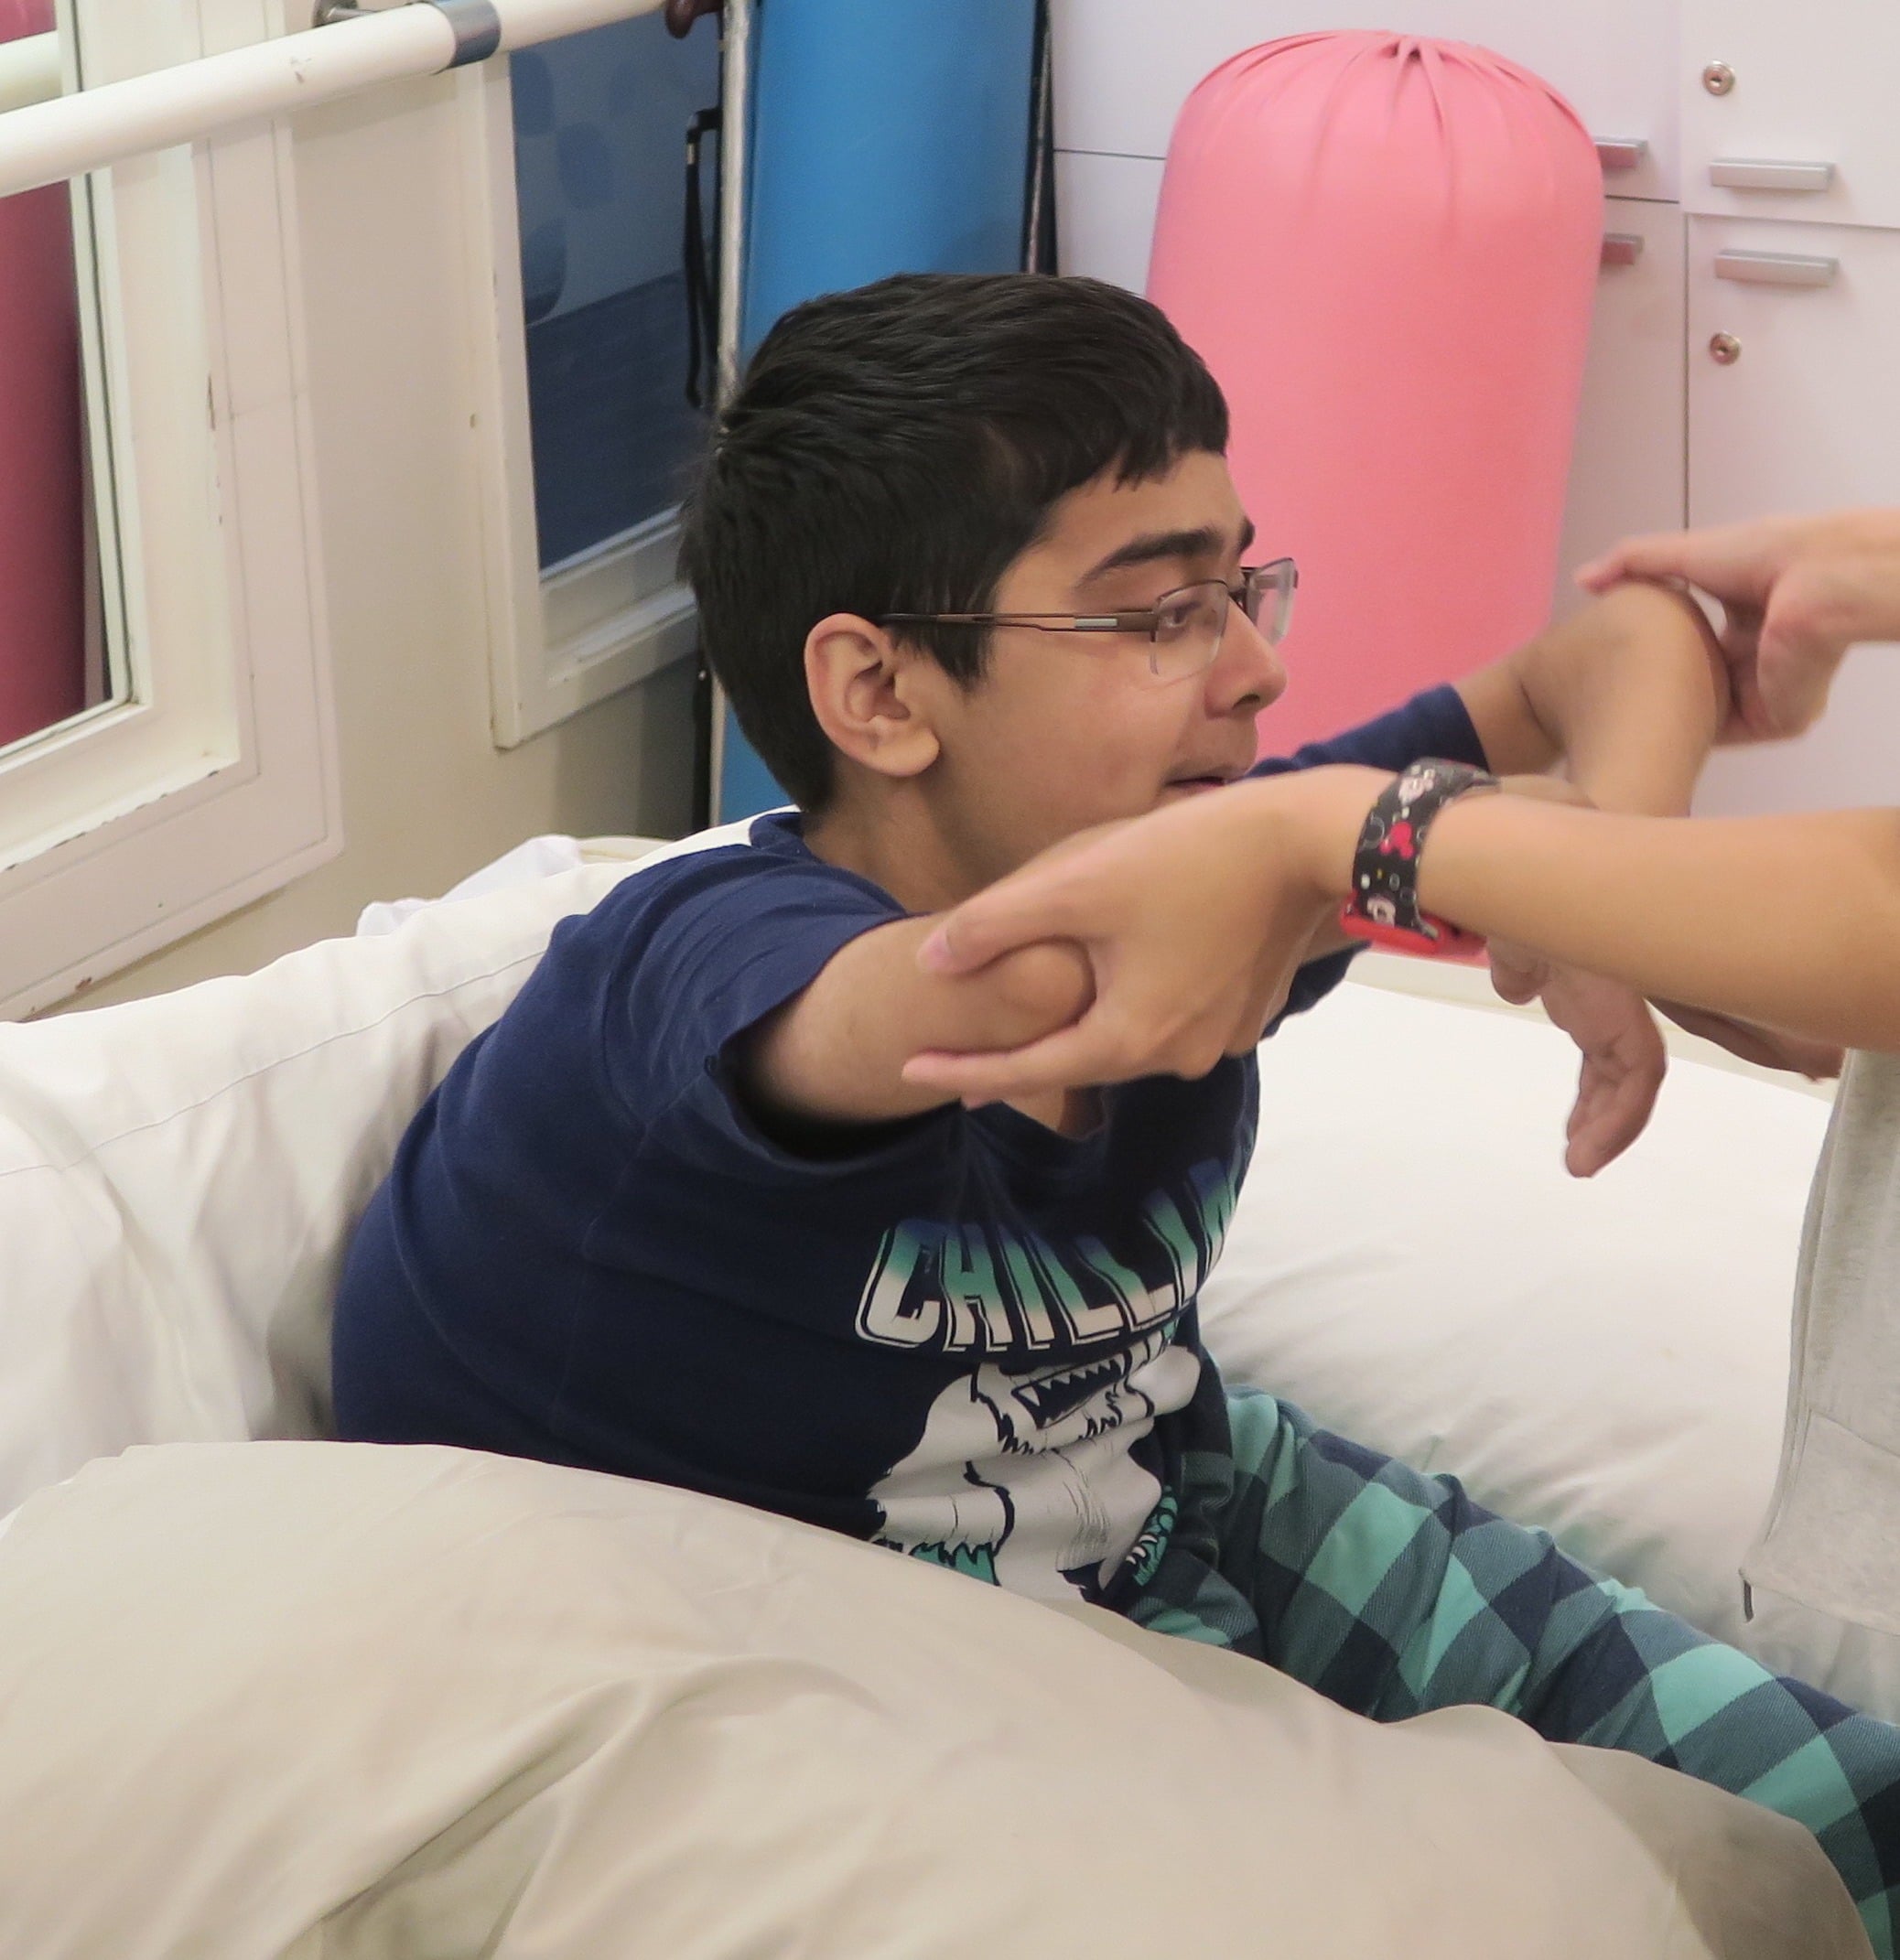 Saif podczas sesji fizjoterapii